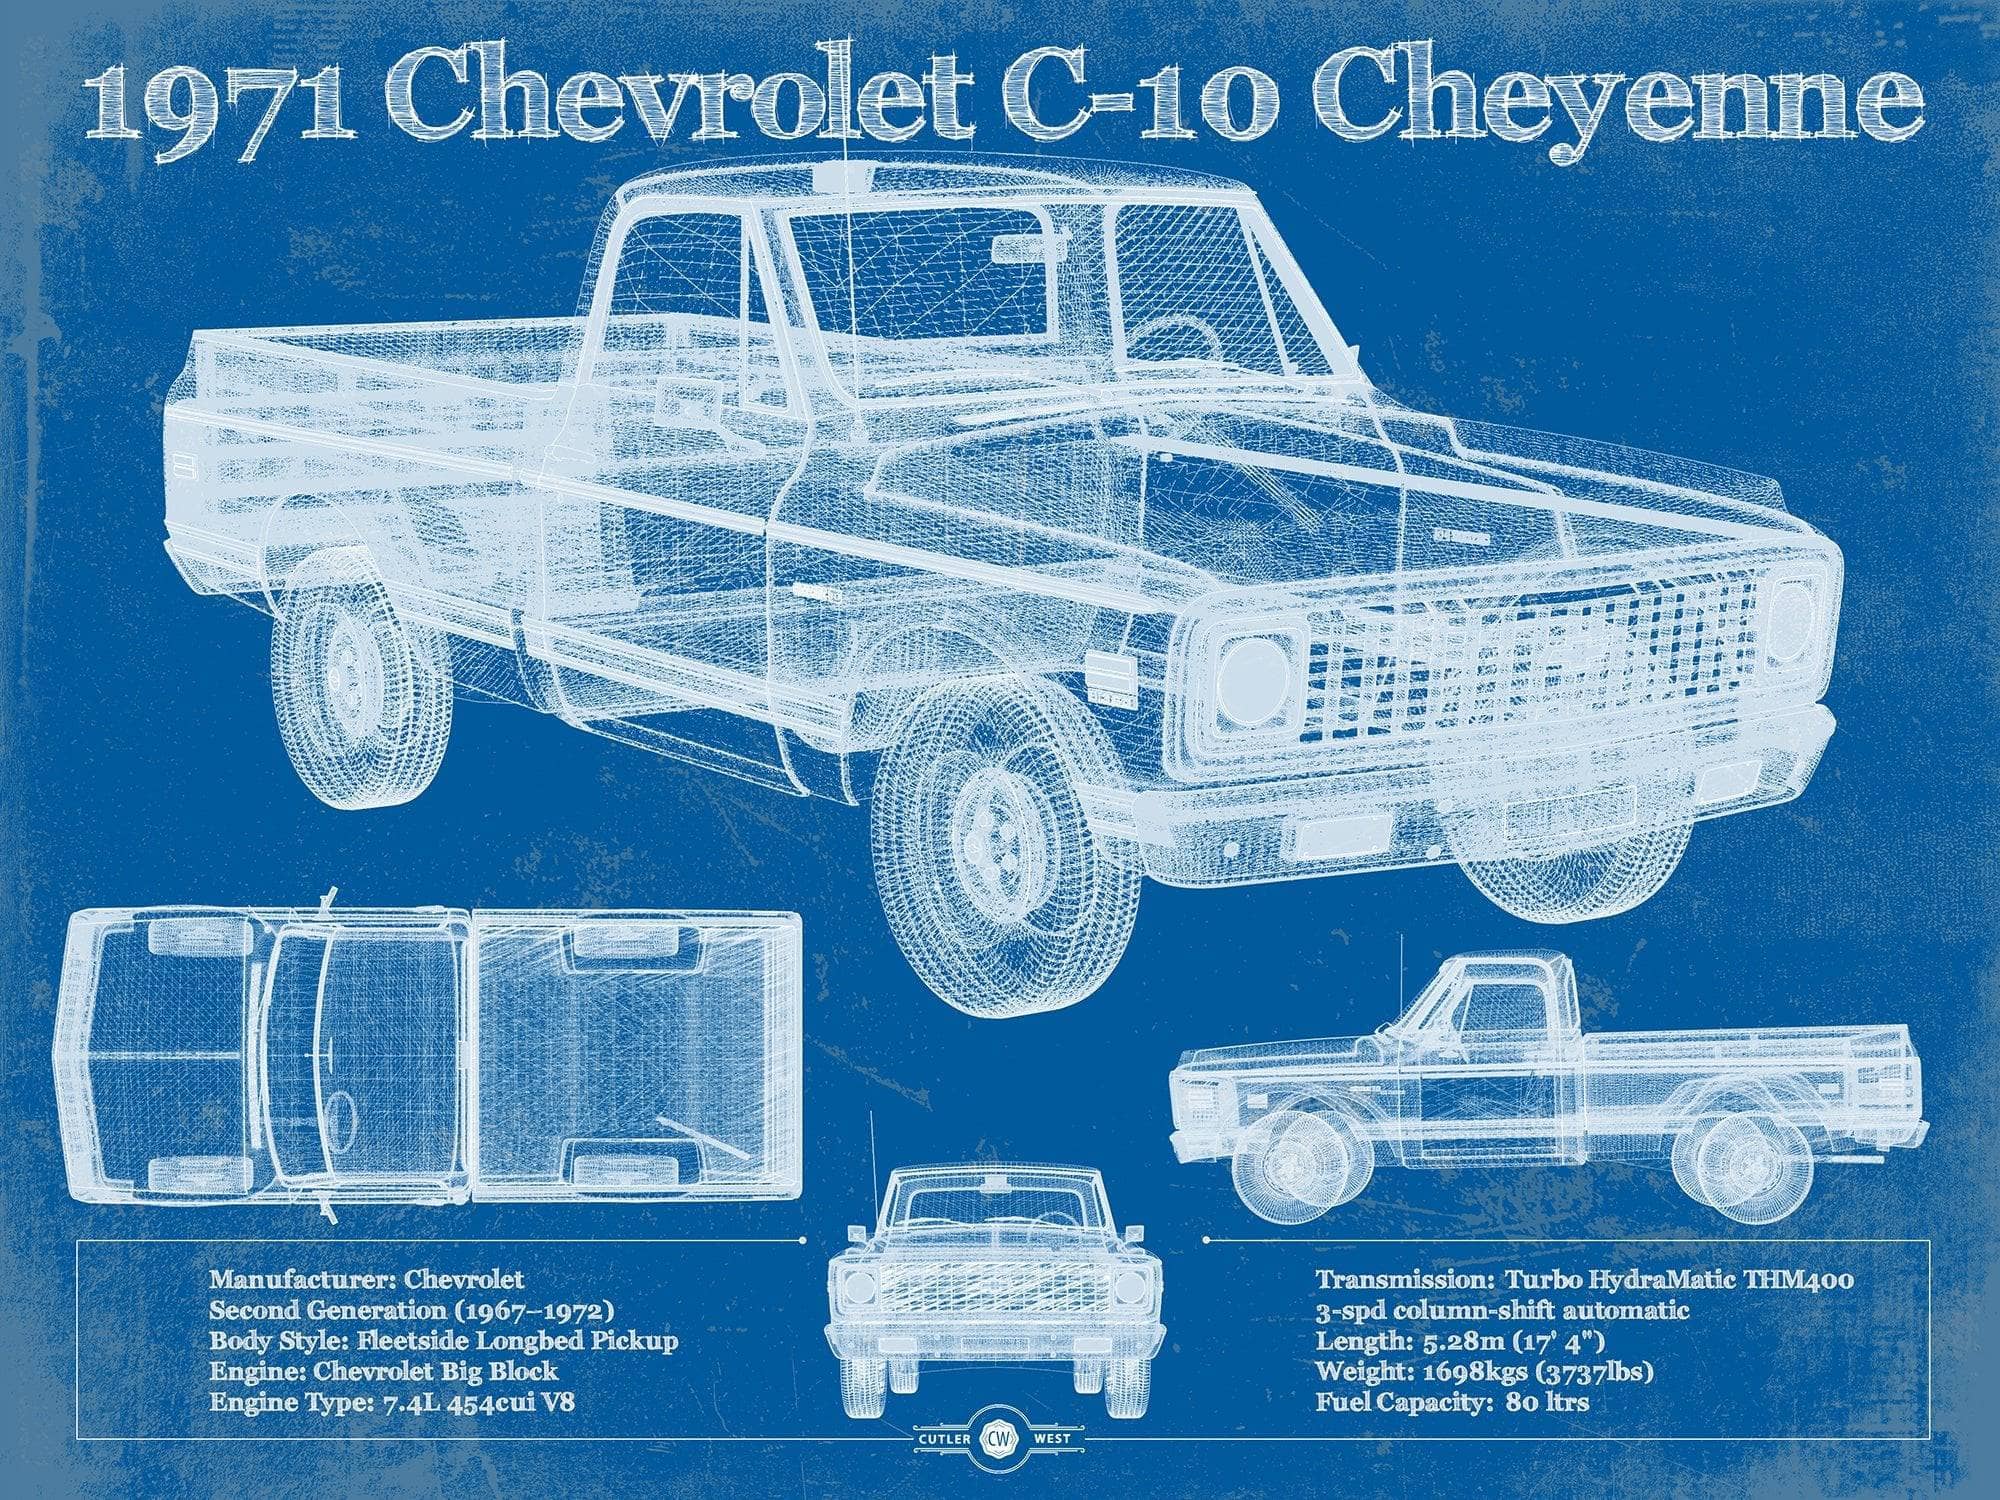 Cutler West Chevrolet Collection 1971 Chevrolet C-10 Cheyenne Original Blueprint Art